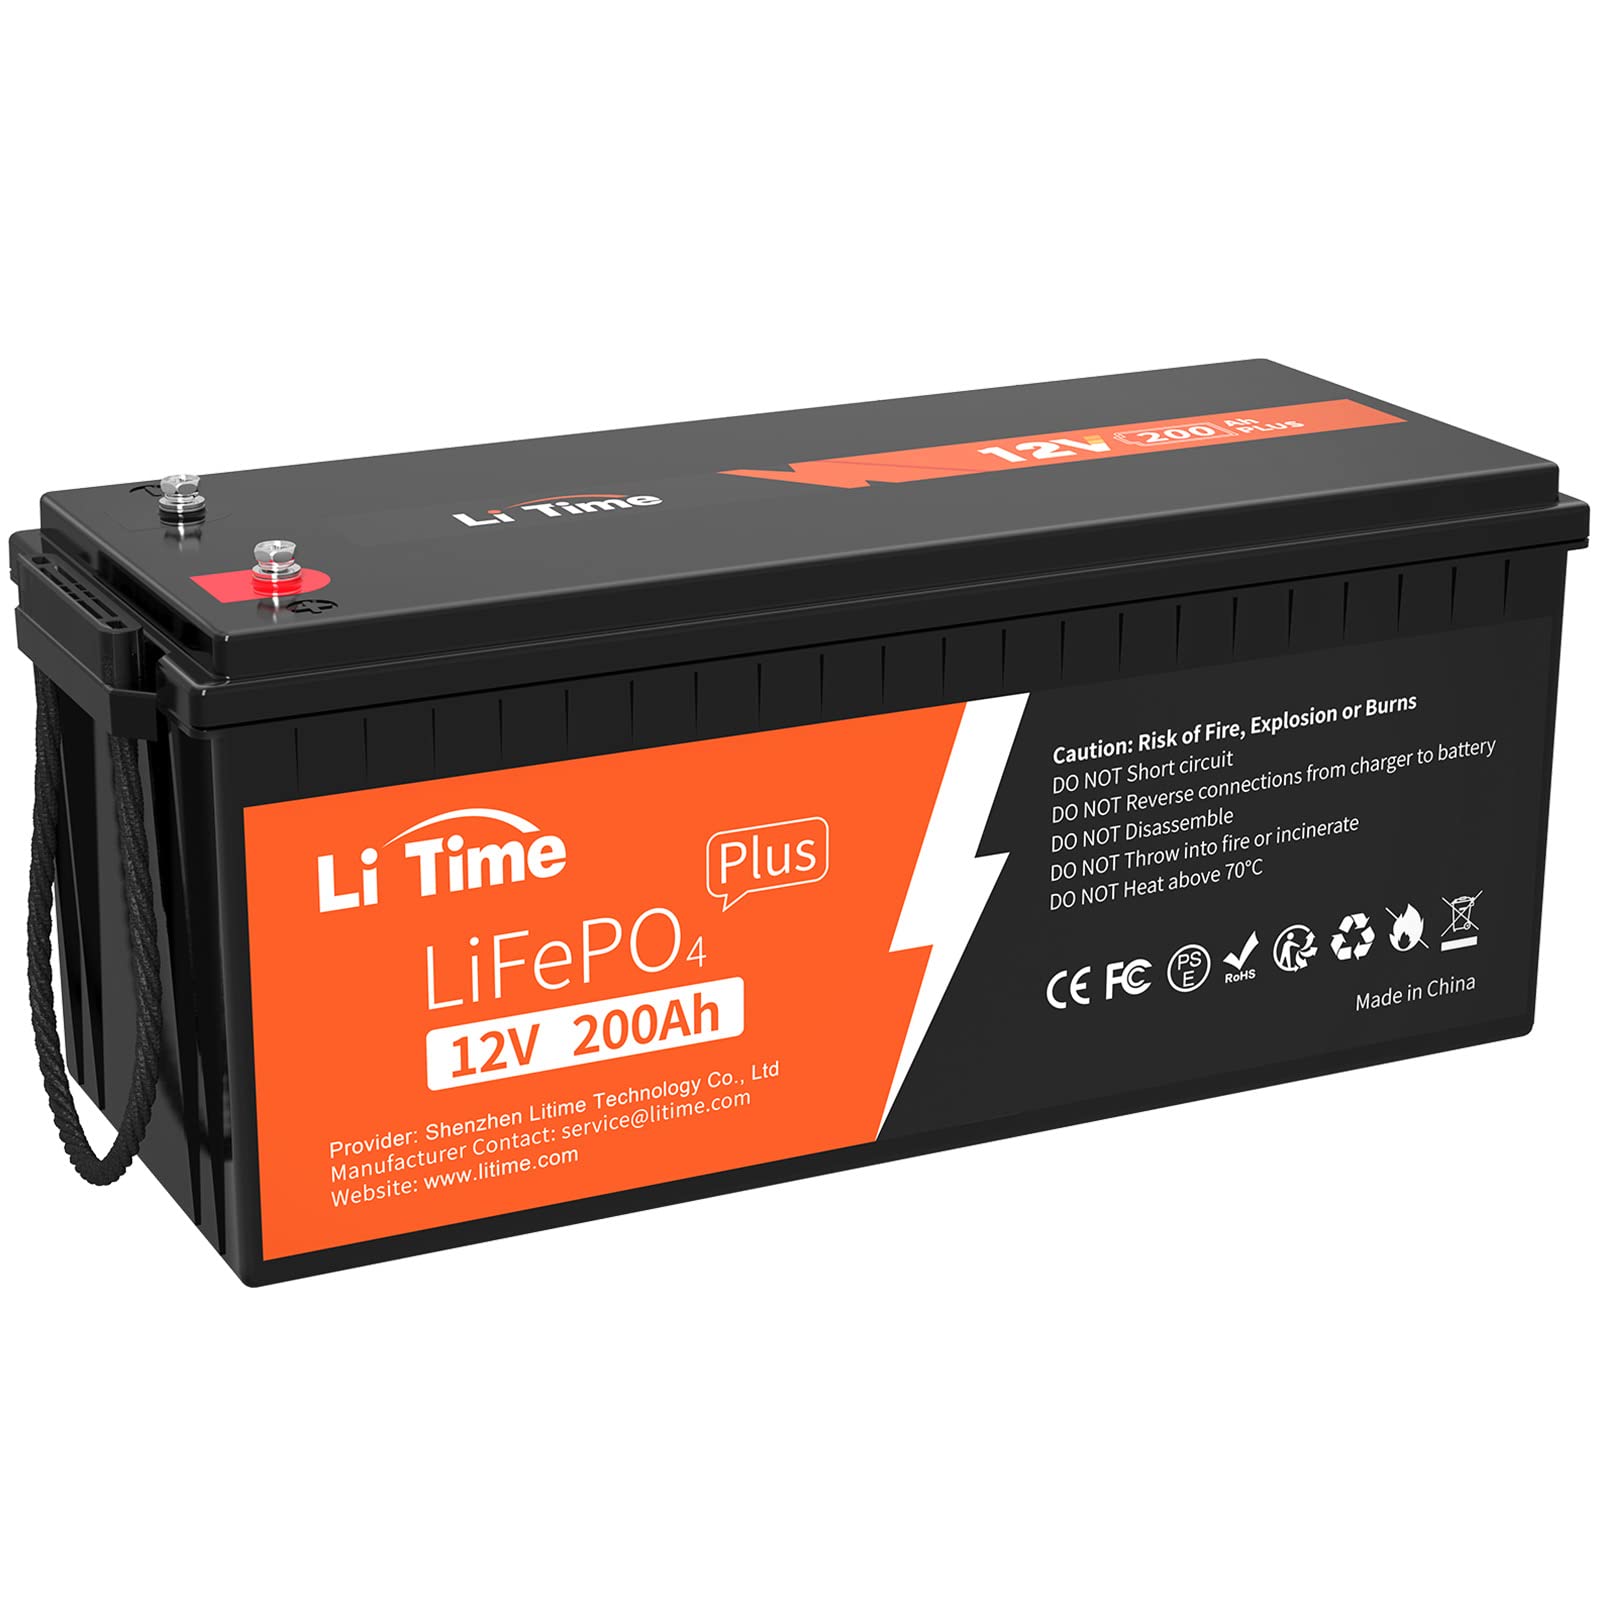 LiTime LiFePO4 200Ah Plus 12V Lithium Batterie Eingebautes 200A BMS, Max.15000 Deep Cycles Zyklen und 2560W Ausgangsleistung, 10 Jahre Lebensdauer, Perfekt für Wohnmobil, Solaranlage, Marine von Litime